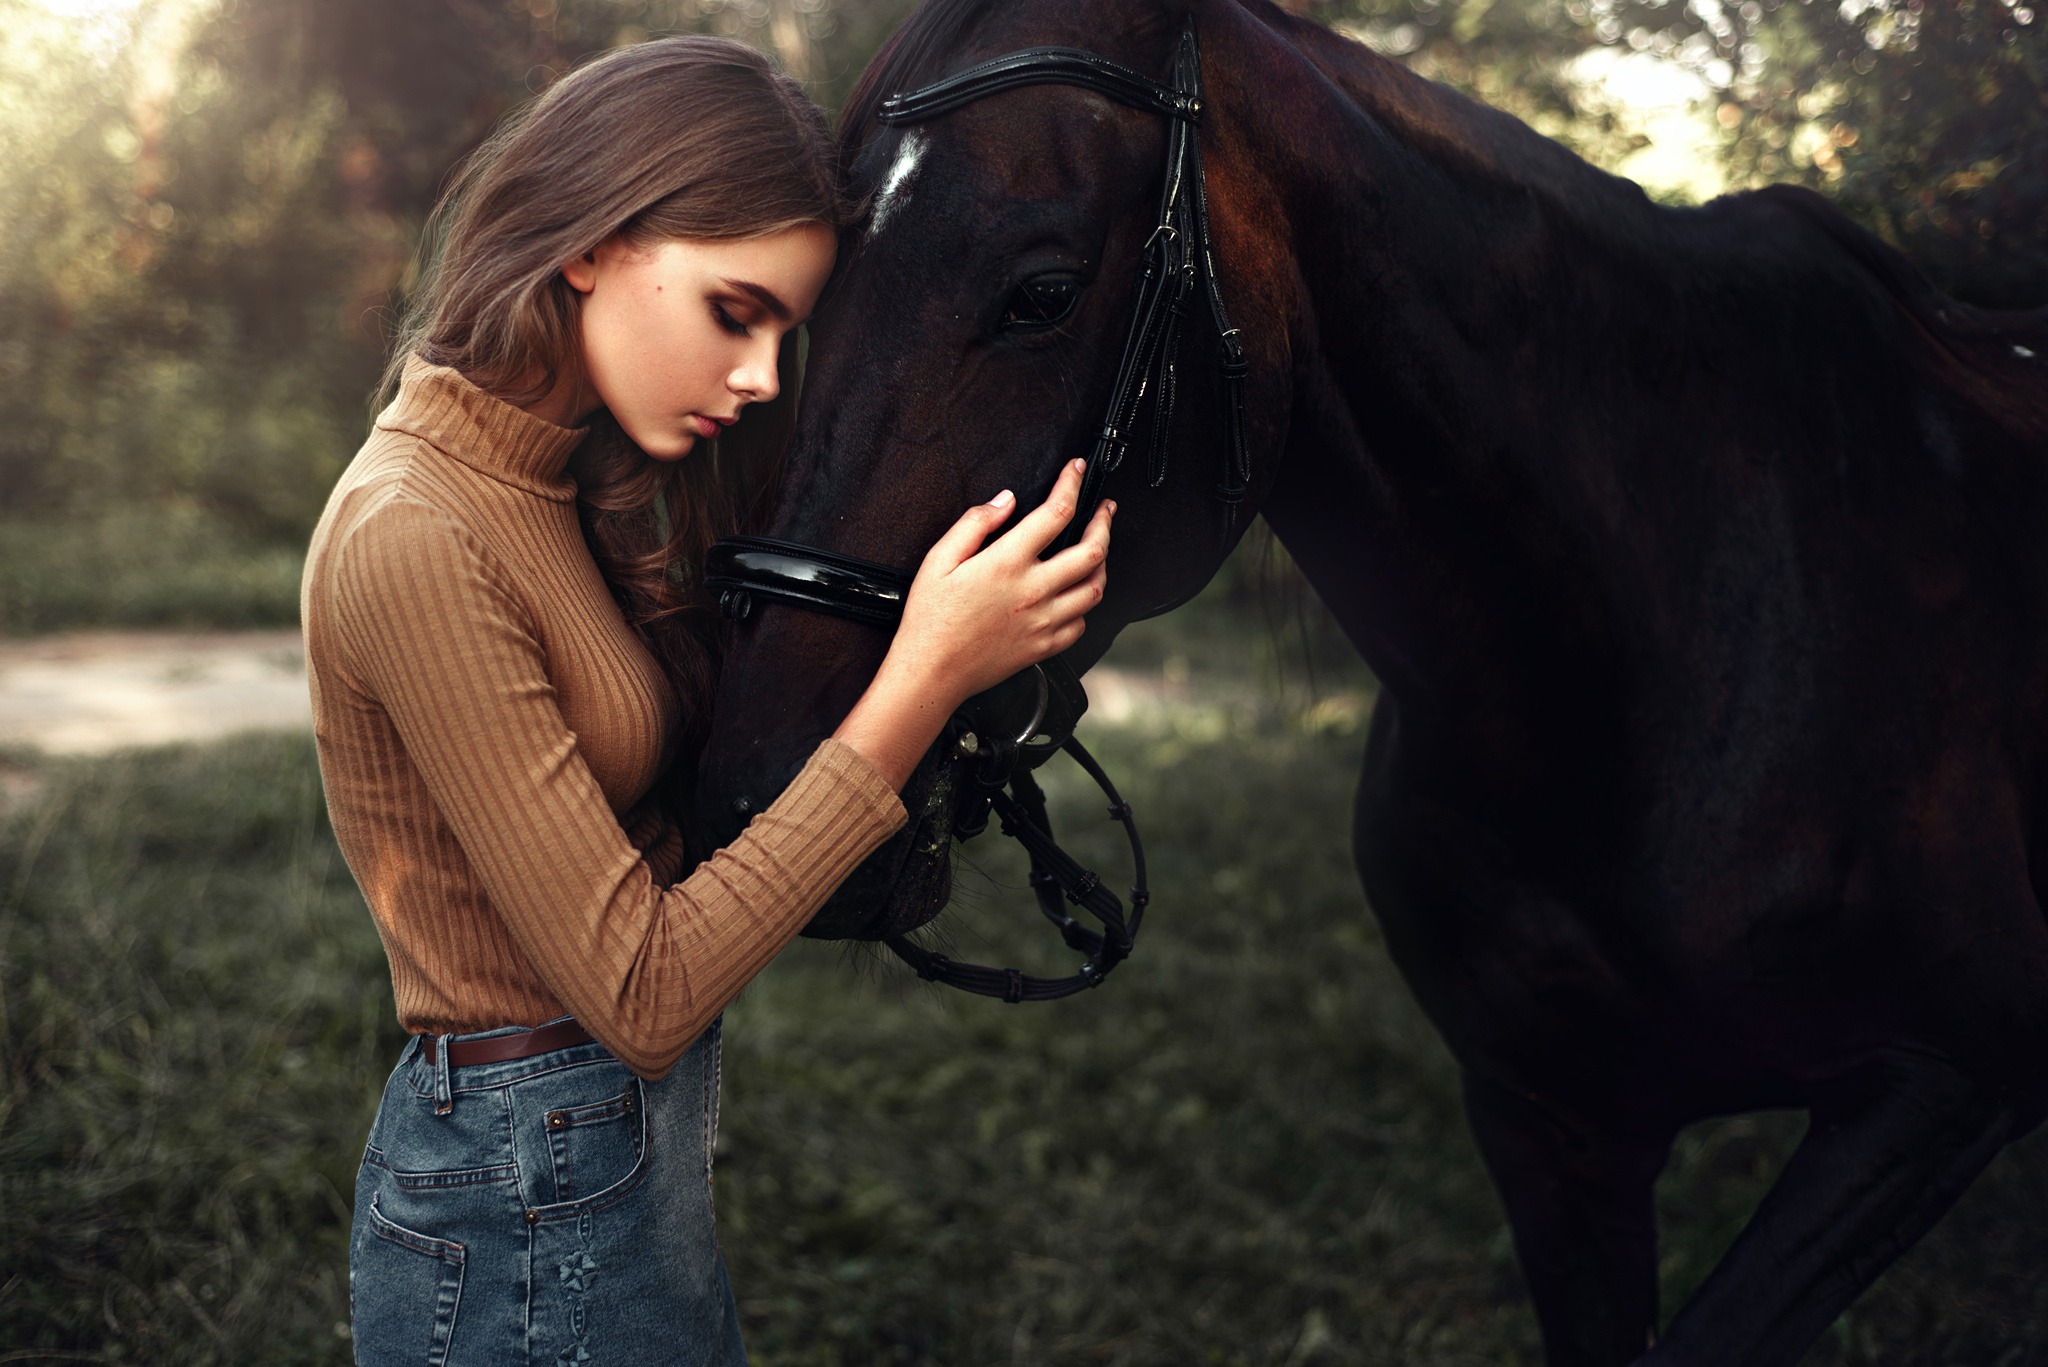 Девушка с лошадью фотосессия